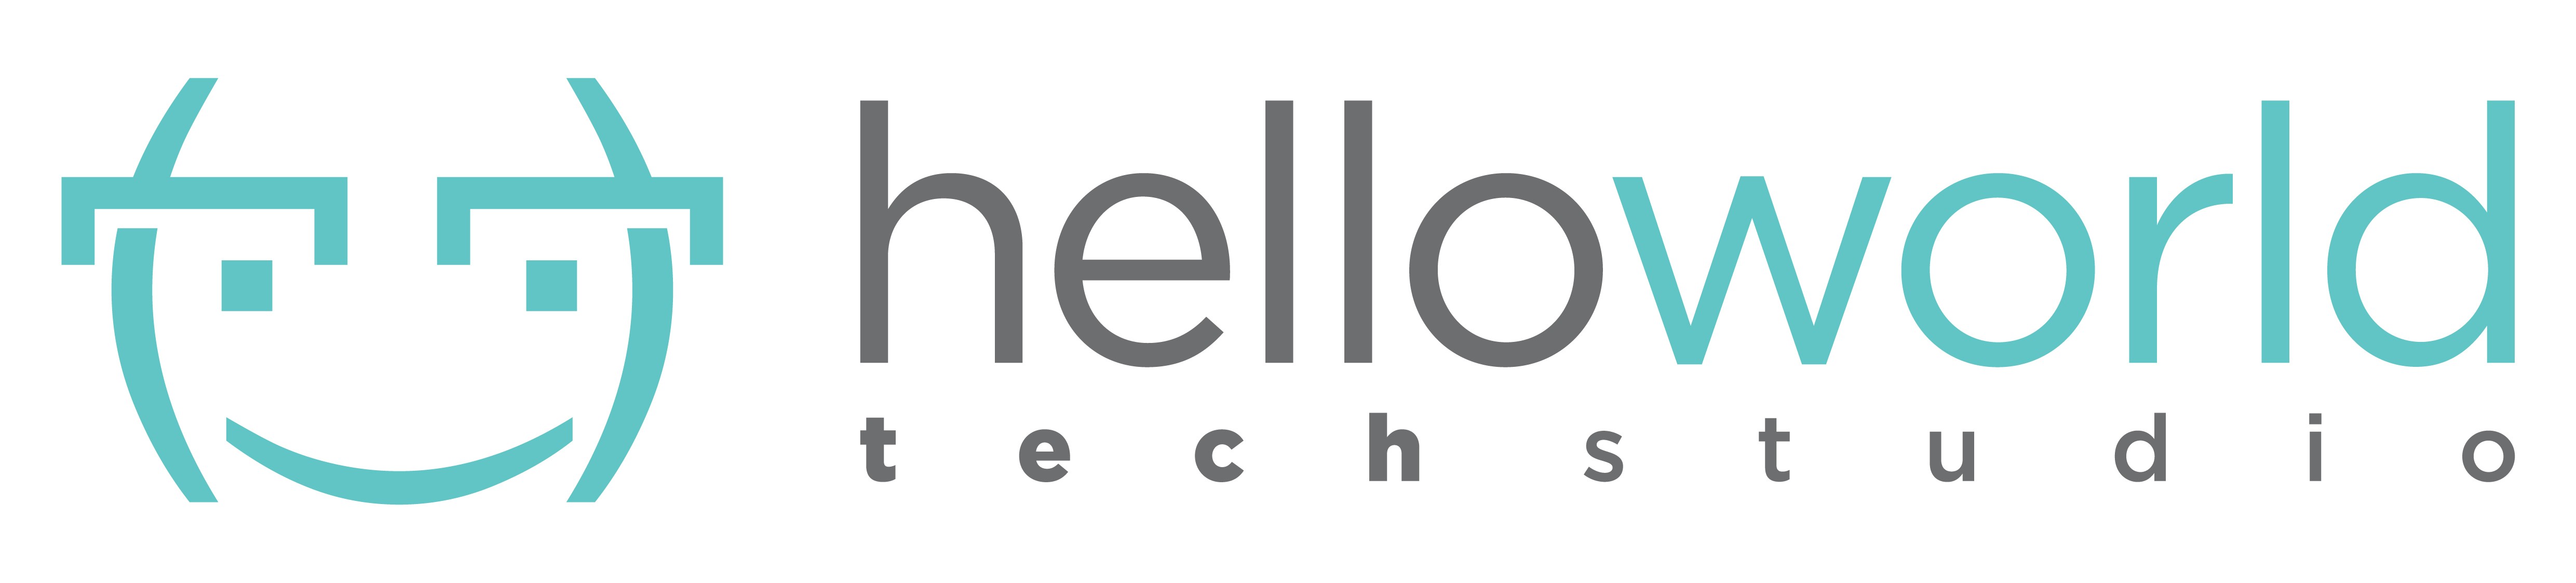 Hello world main logo 2(2)